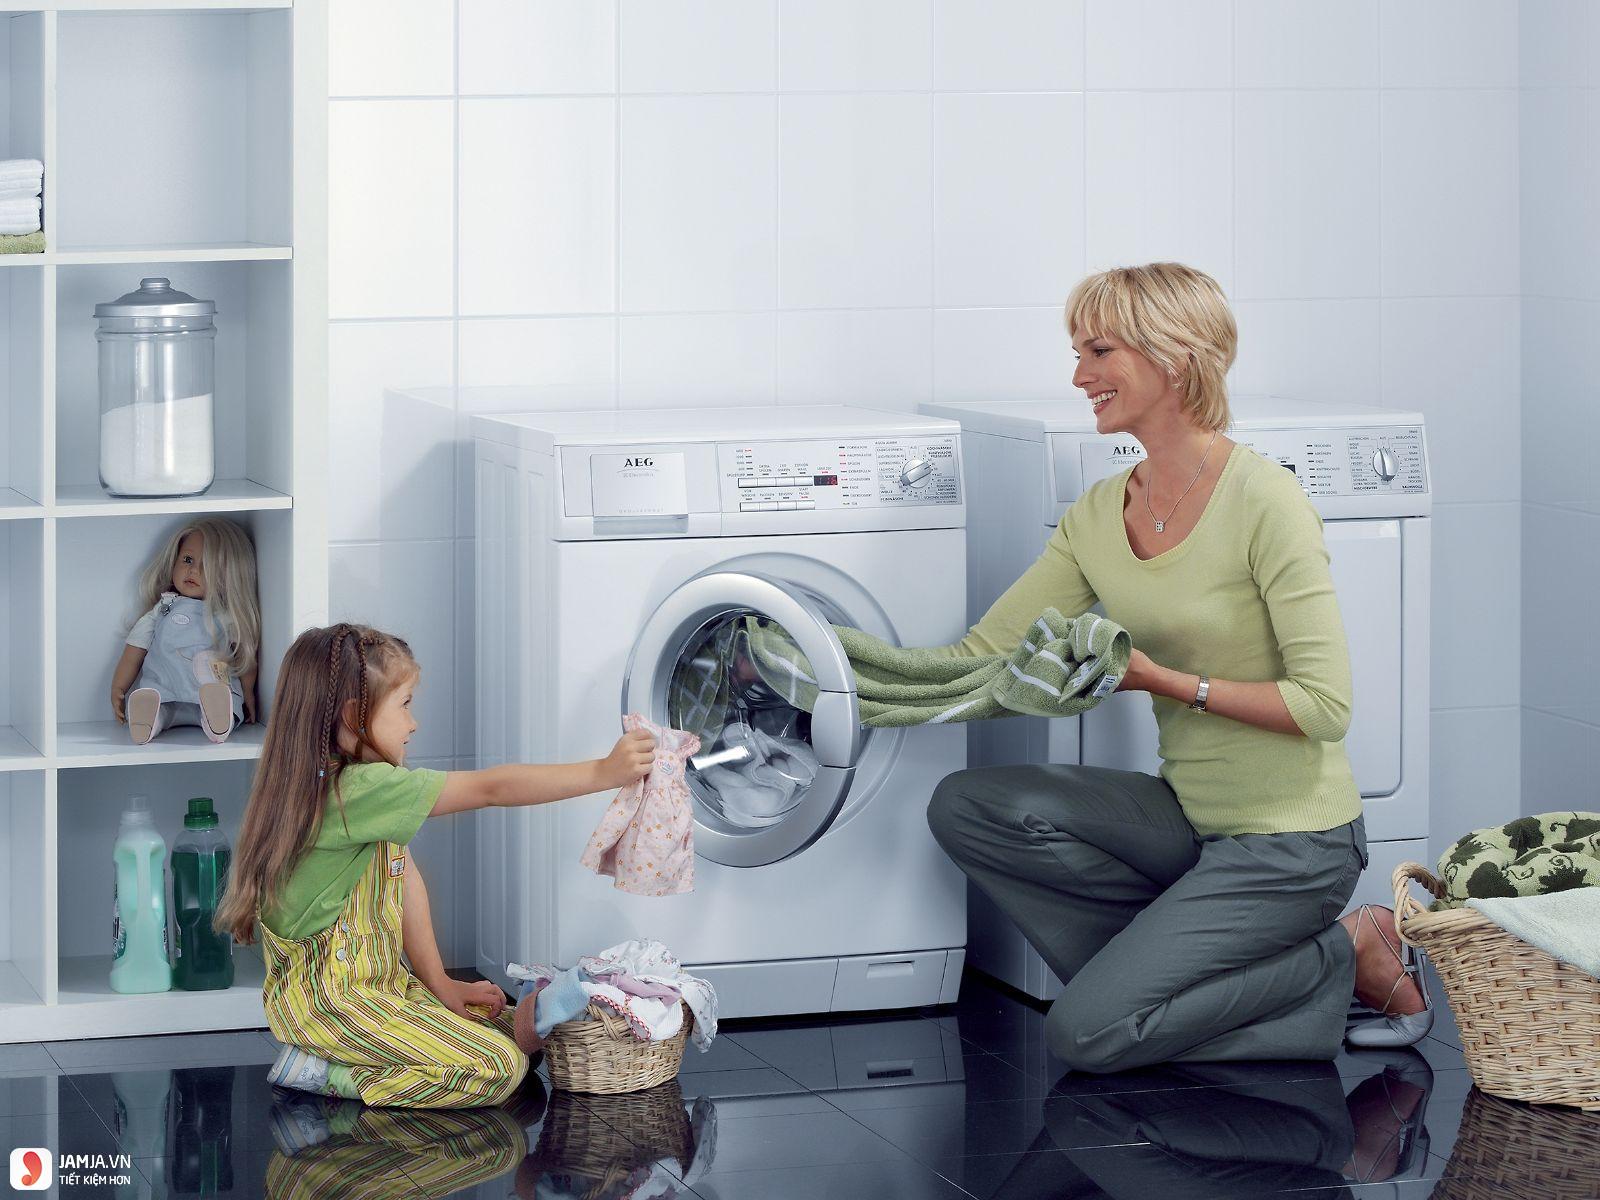 Kinh nghiệm mua máy giặt cần lưu ý những gì